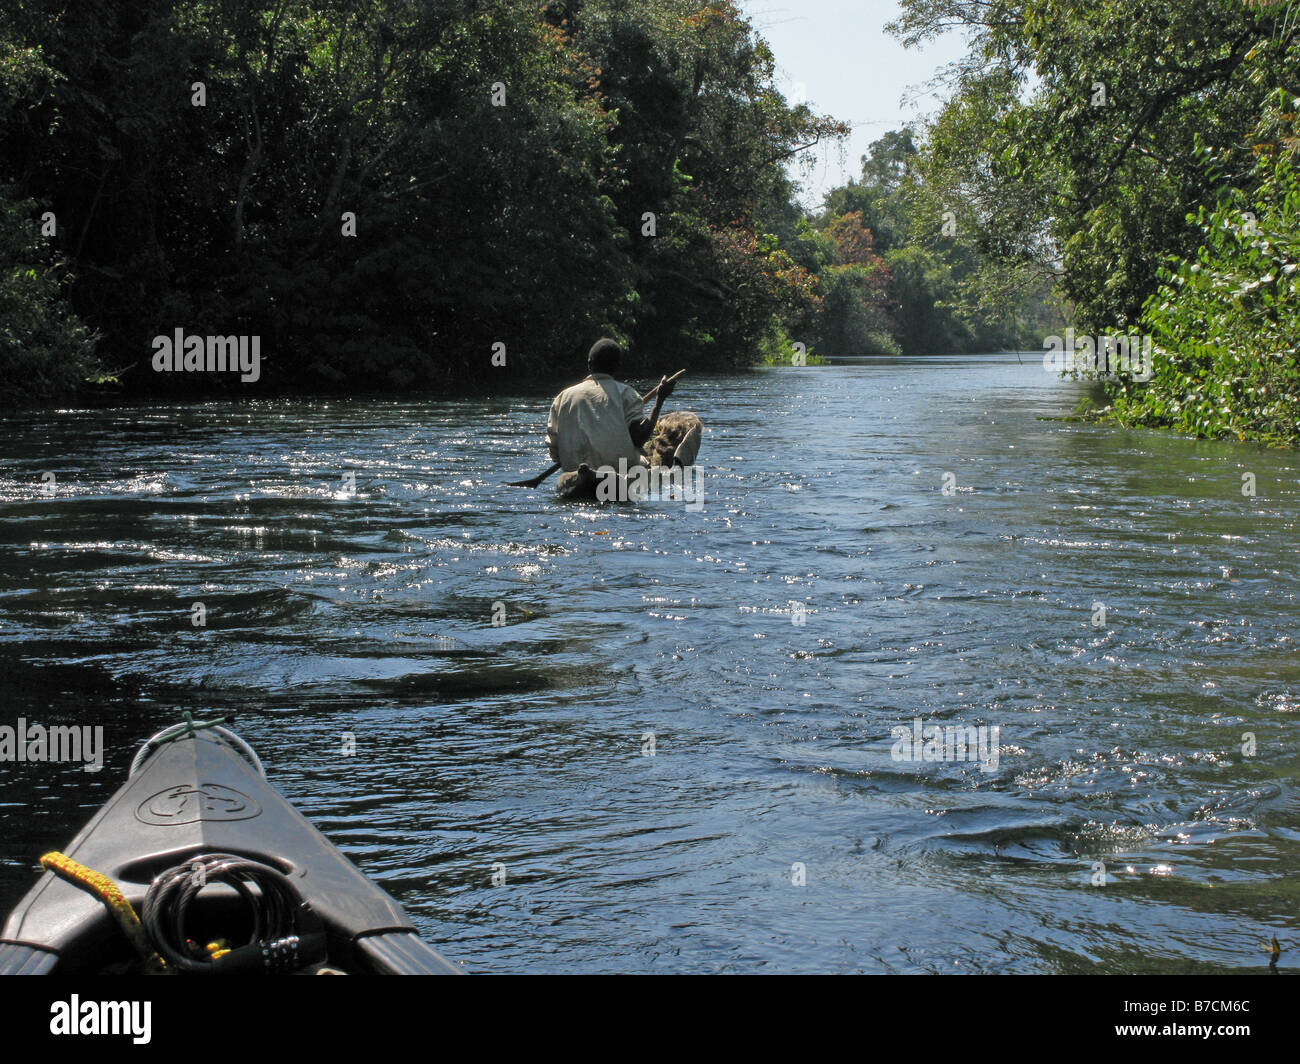 Proue de Canadian canoe après pêcheur local en pirogue à travers la jungle sur canal dans la province du Katanga de la rivière Luvua Zaïre Banque D'Images